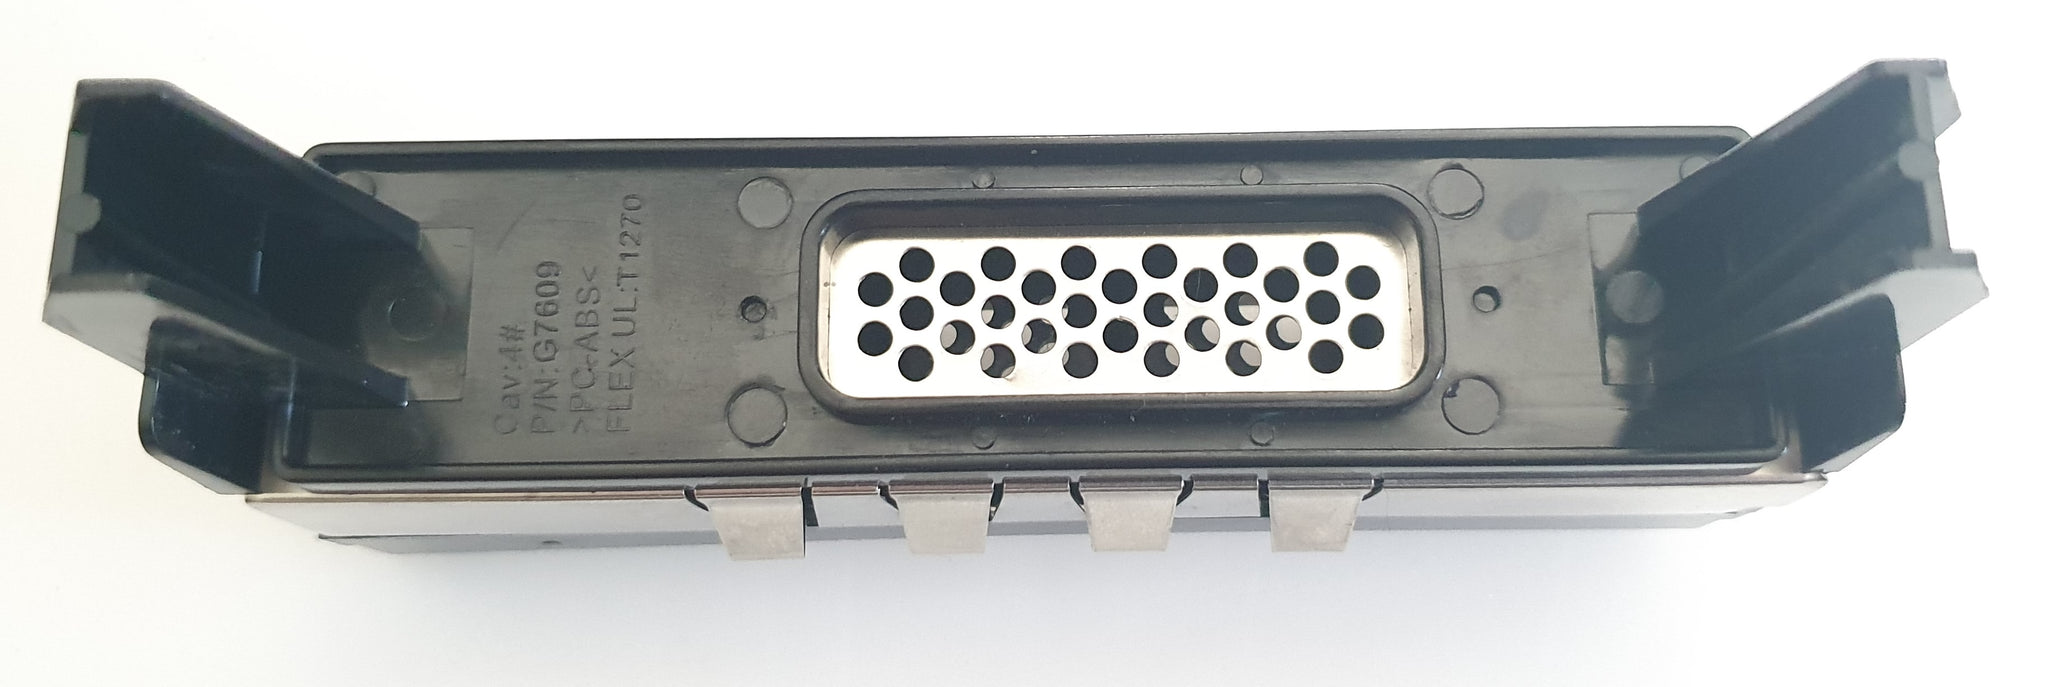 Dell PowerEdge 2950 - Blank Hard Drive Bay Filler Panel G7609 0G7609